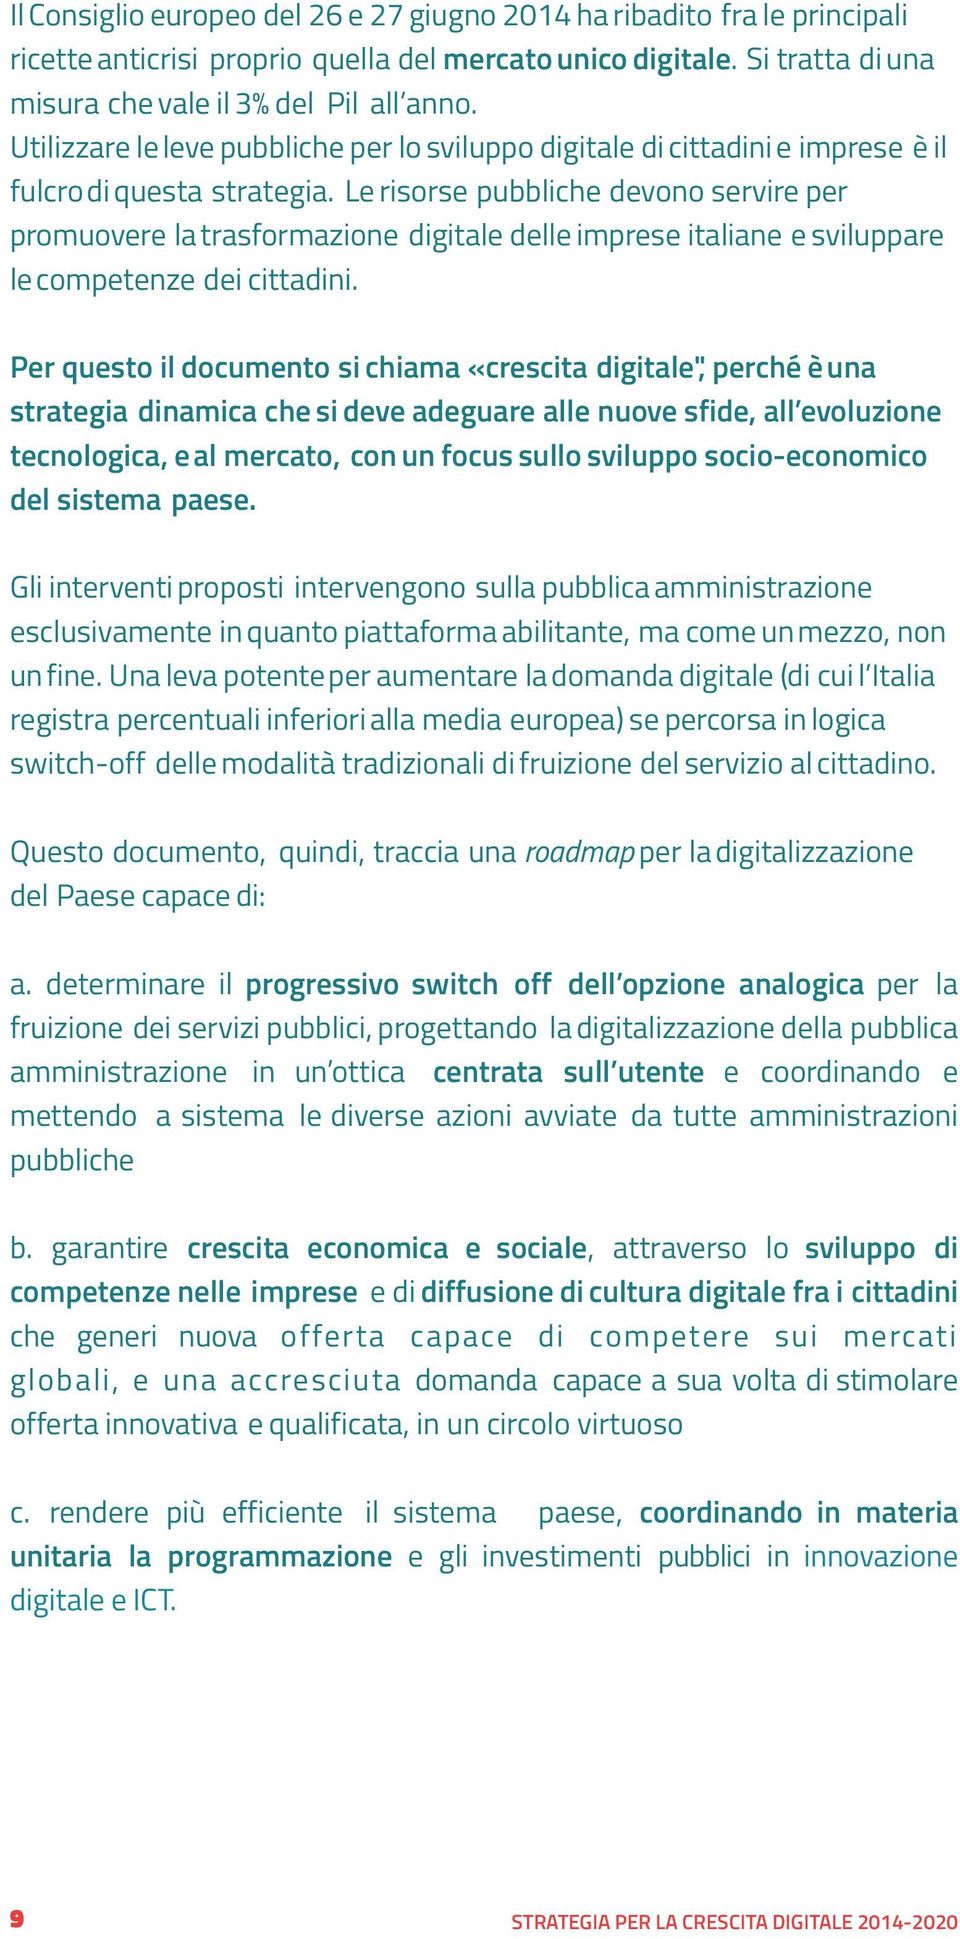 Le risorse pubbliche devono servire per promuovere la trasformazione digitale delle imprese italiane e sviluppare le competenze dei cittadini.